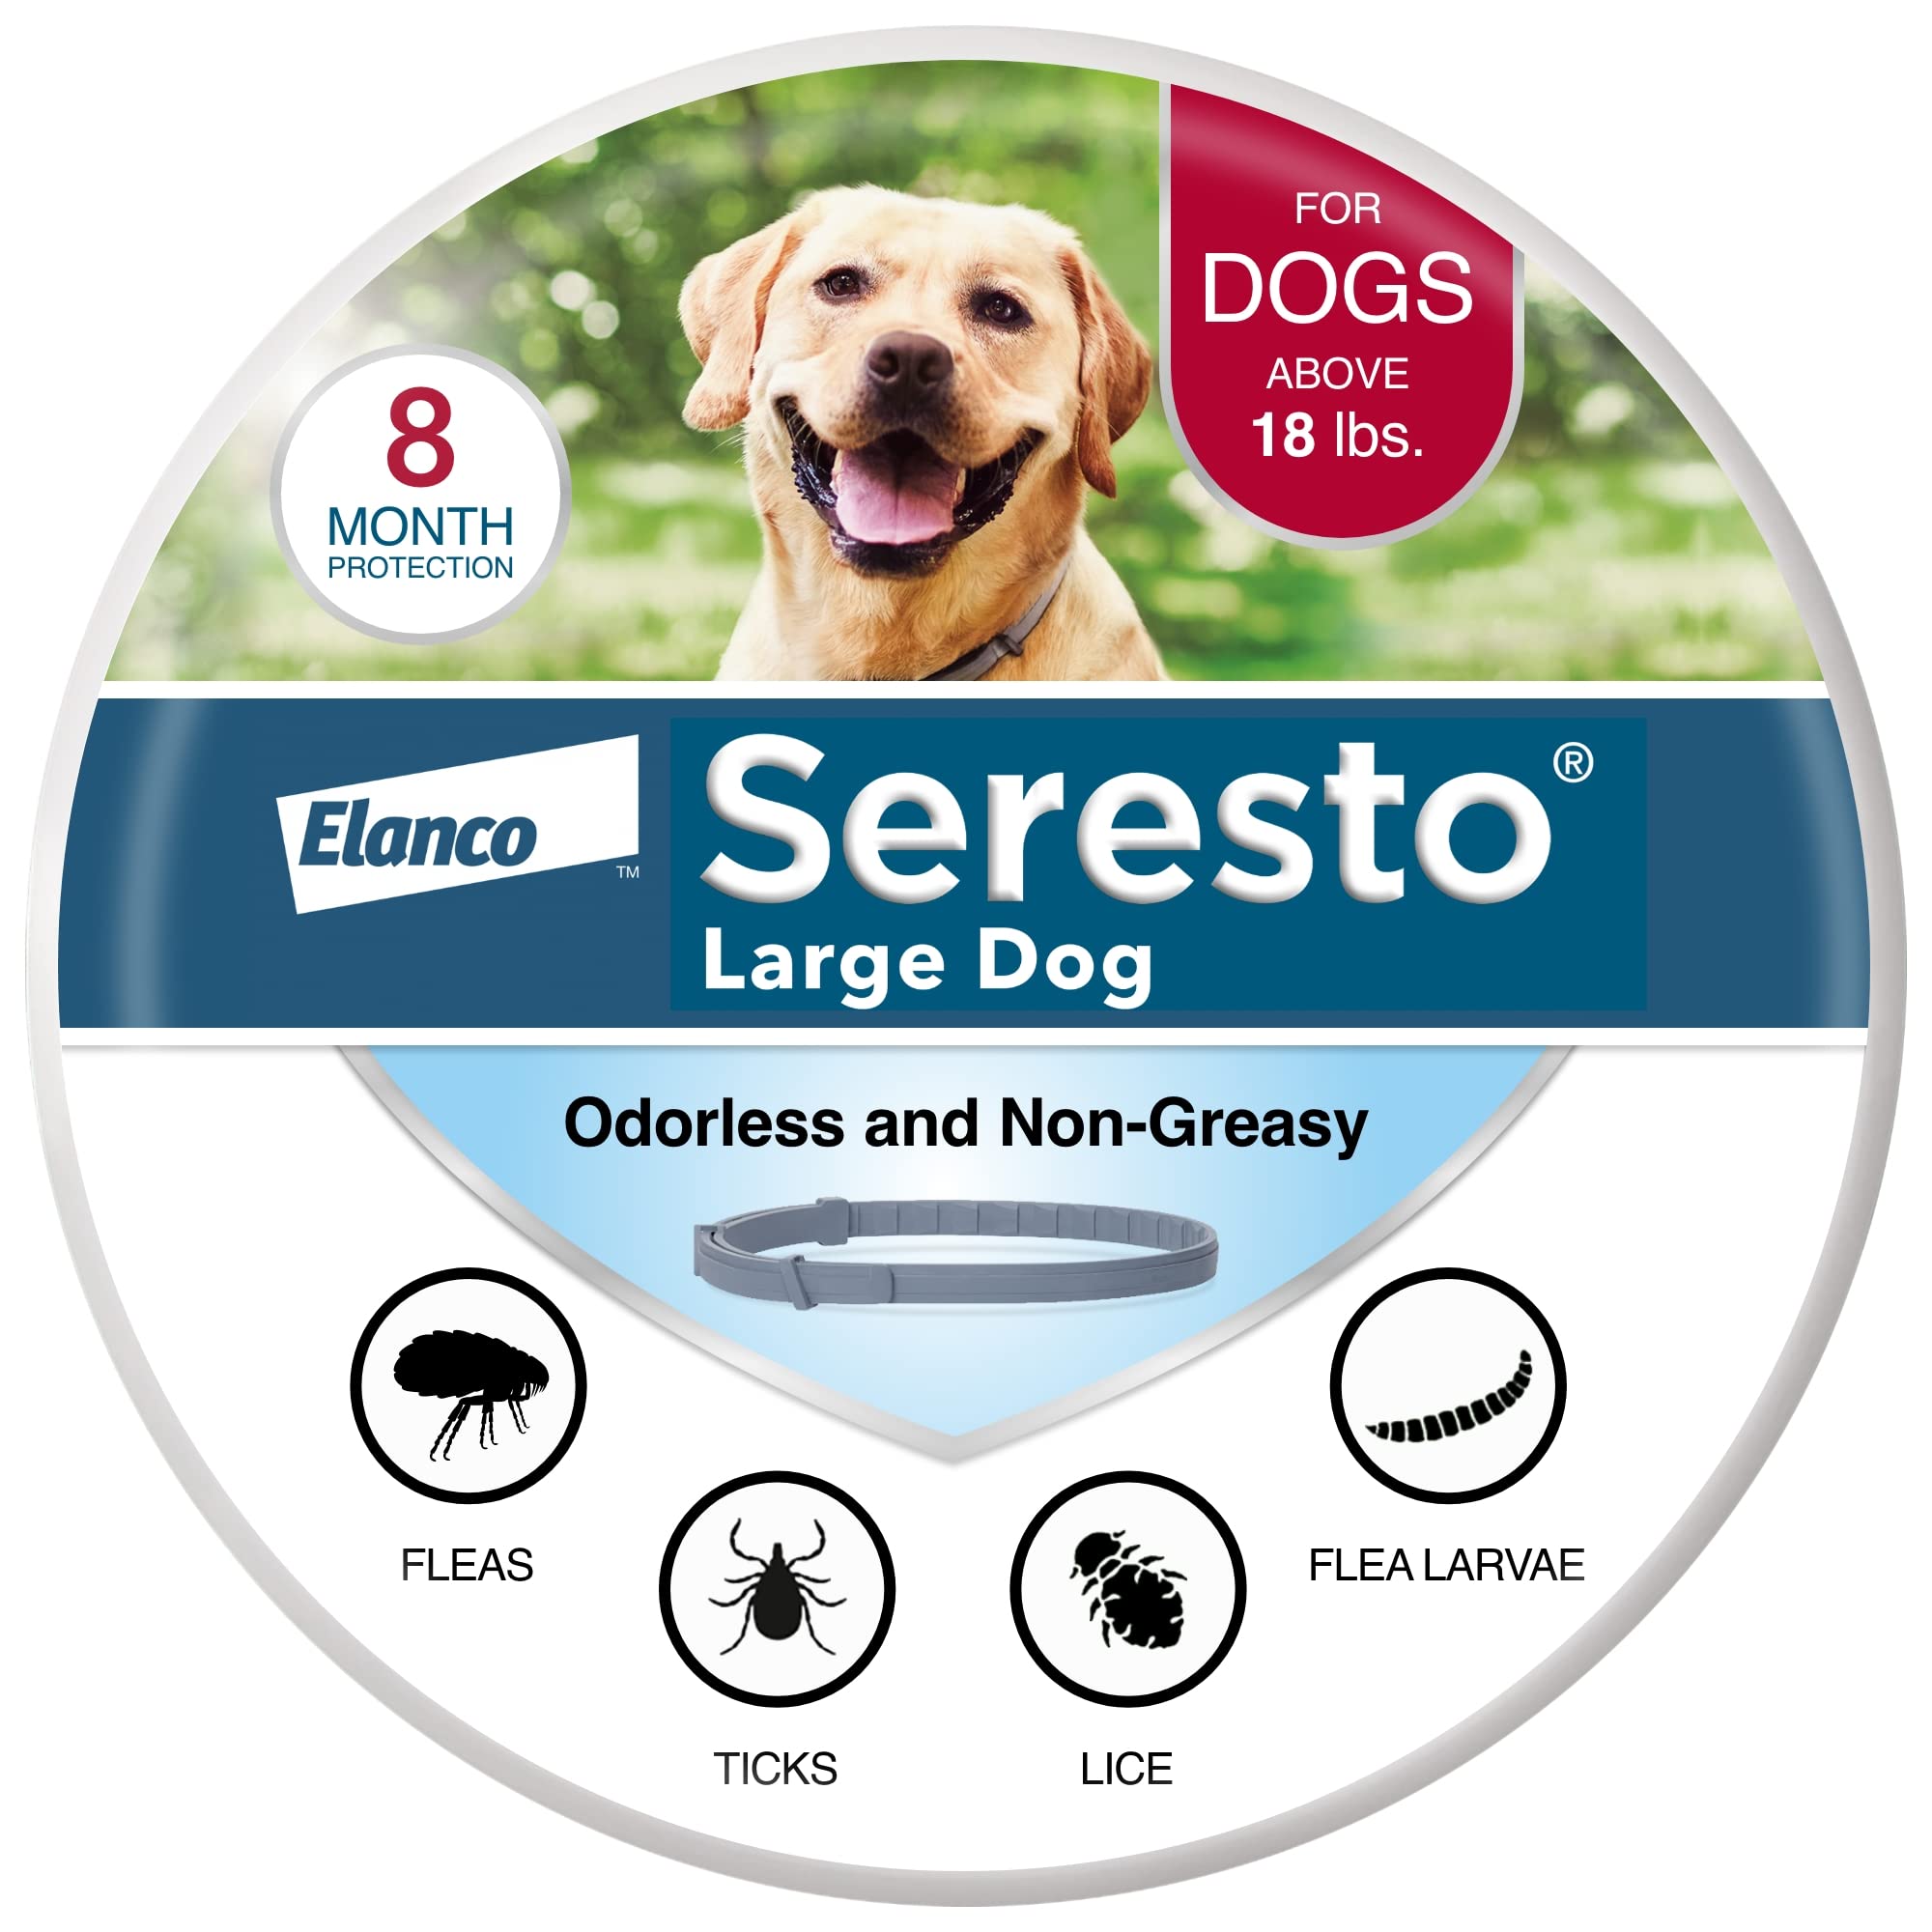  Seresto 18 पाउंड से अधिक वजन वाले कुत्तों के लिए बड़े कुत्ते के पशुचिकित्सक द्वारा...